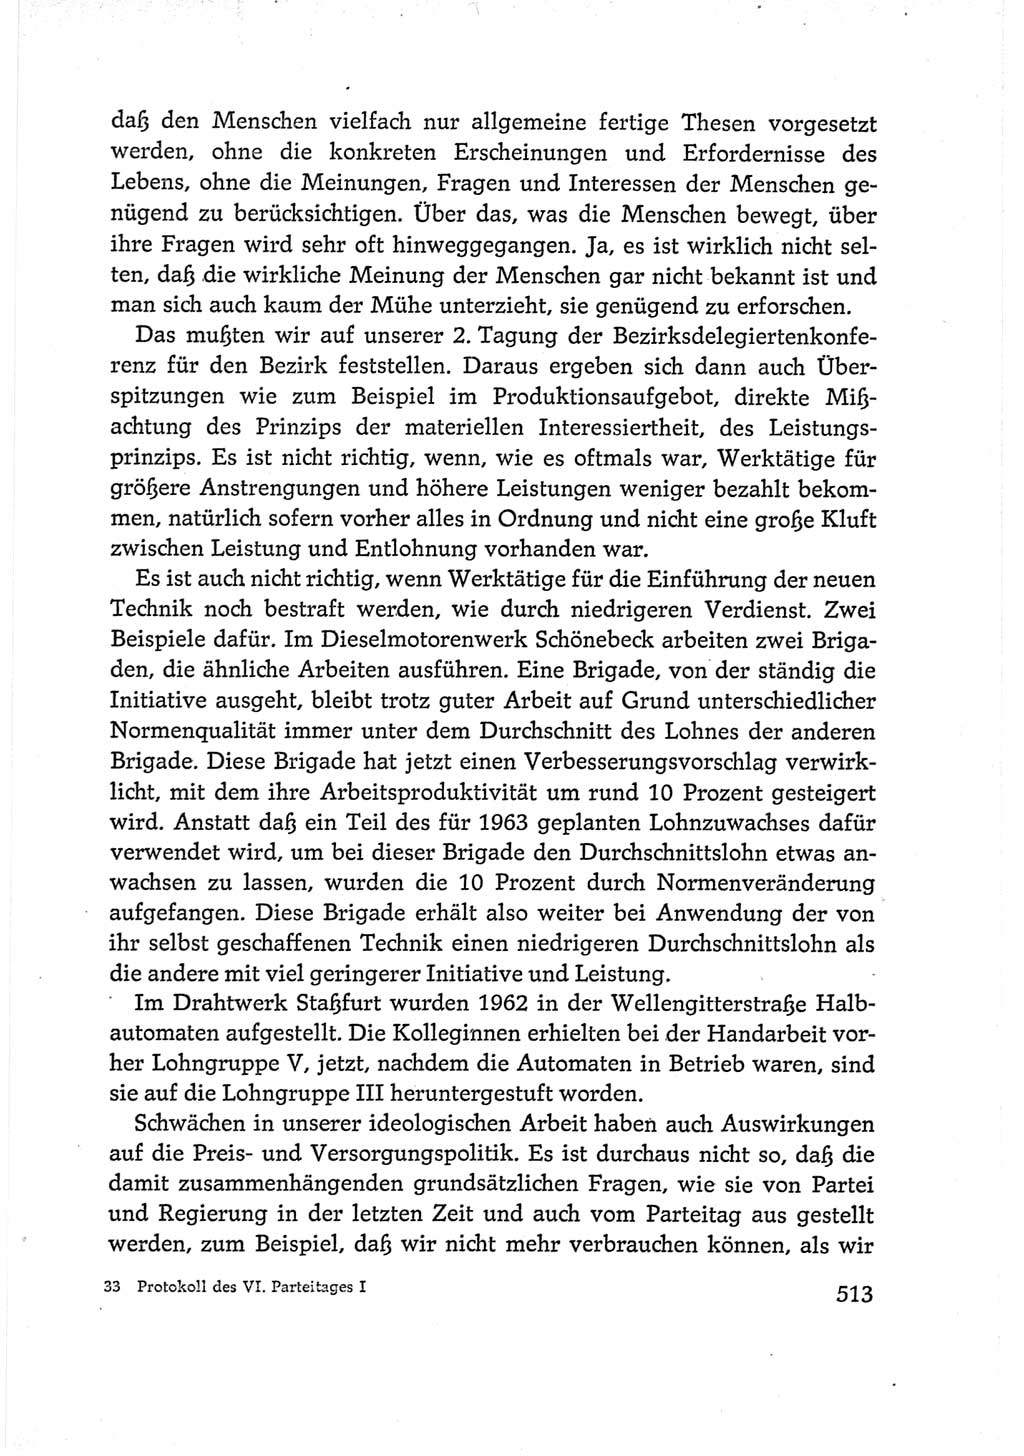 Protokoll der Verhandlungen des Ⅵ. Parteitages der Sozialistischen Einheitspartei Deutschlands (SED) [Deutsche Demokratische Republik (DDR)] 1963, Band Ⅰ, Seite 513 (Prot. Verh. Ⅵ. PT SED DDR 1963, Bd. Ⅰ, S. 513)